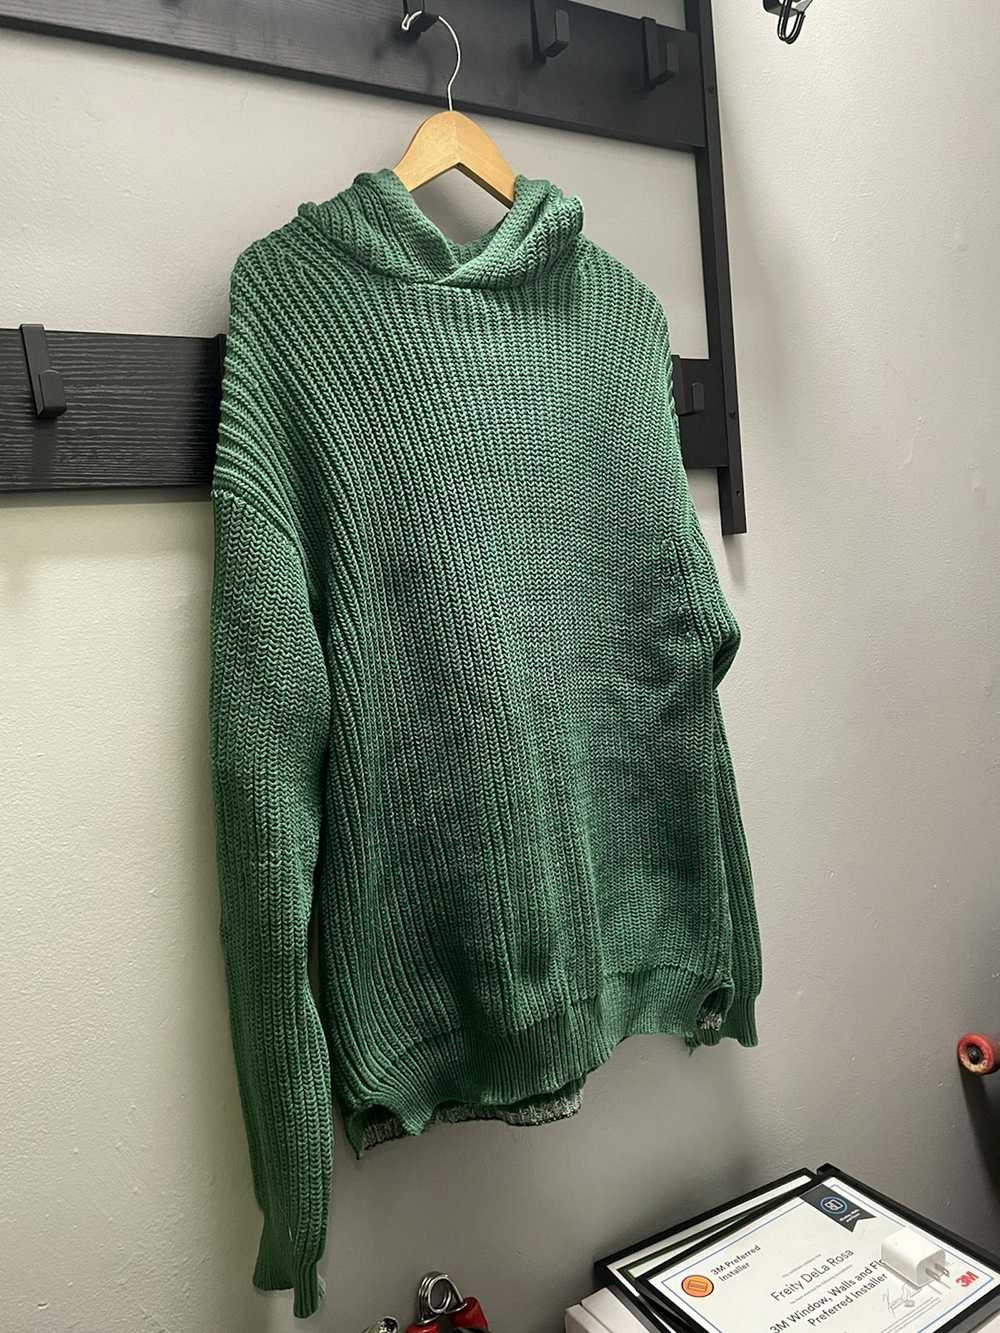 Alexander Wang Green Knit Alexander Wang Sweater - image 1